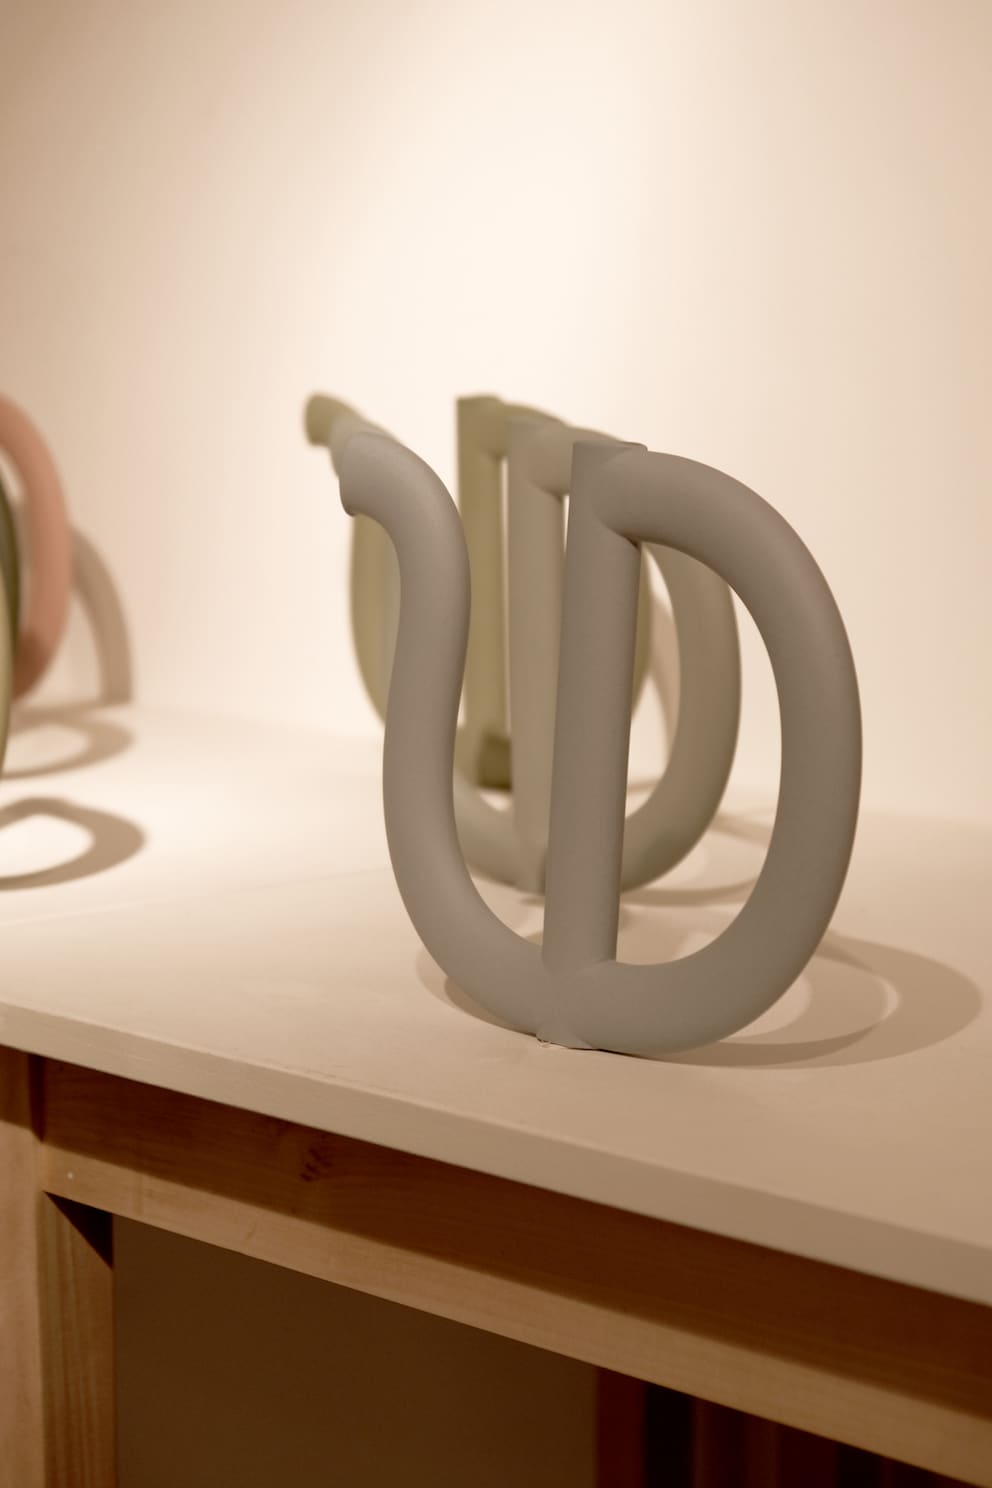 Die ovale Form des Schlauchs verstärkt den grafischen Charakter der Keramikkanne.